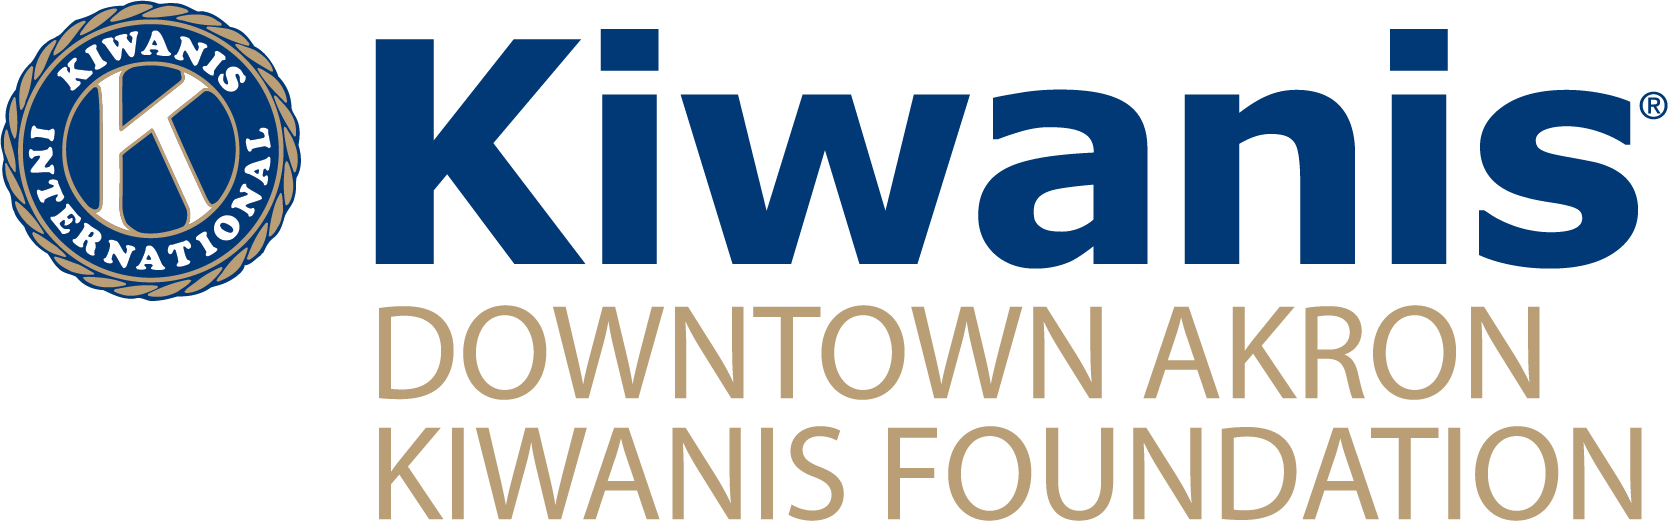 The Downtown Akron Kiwanis Foundation